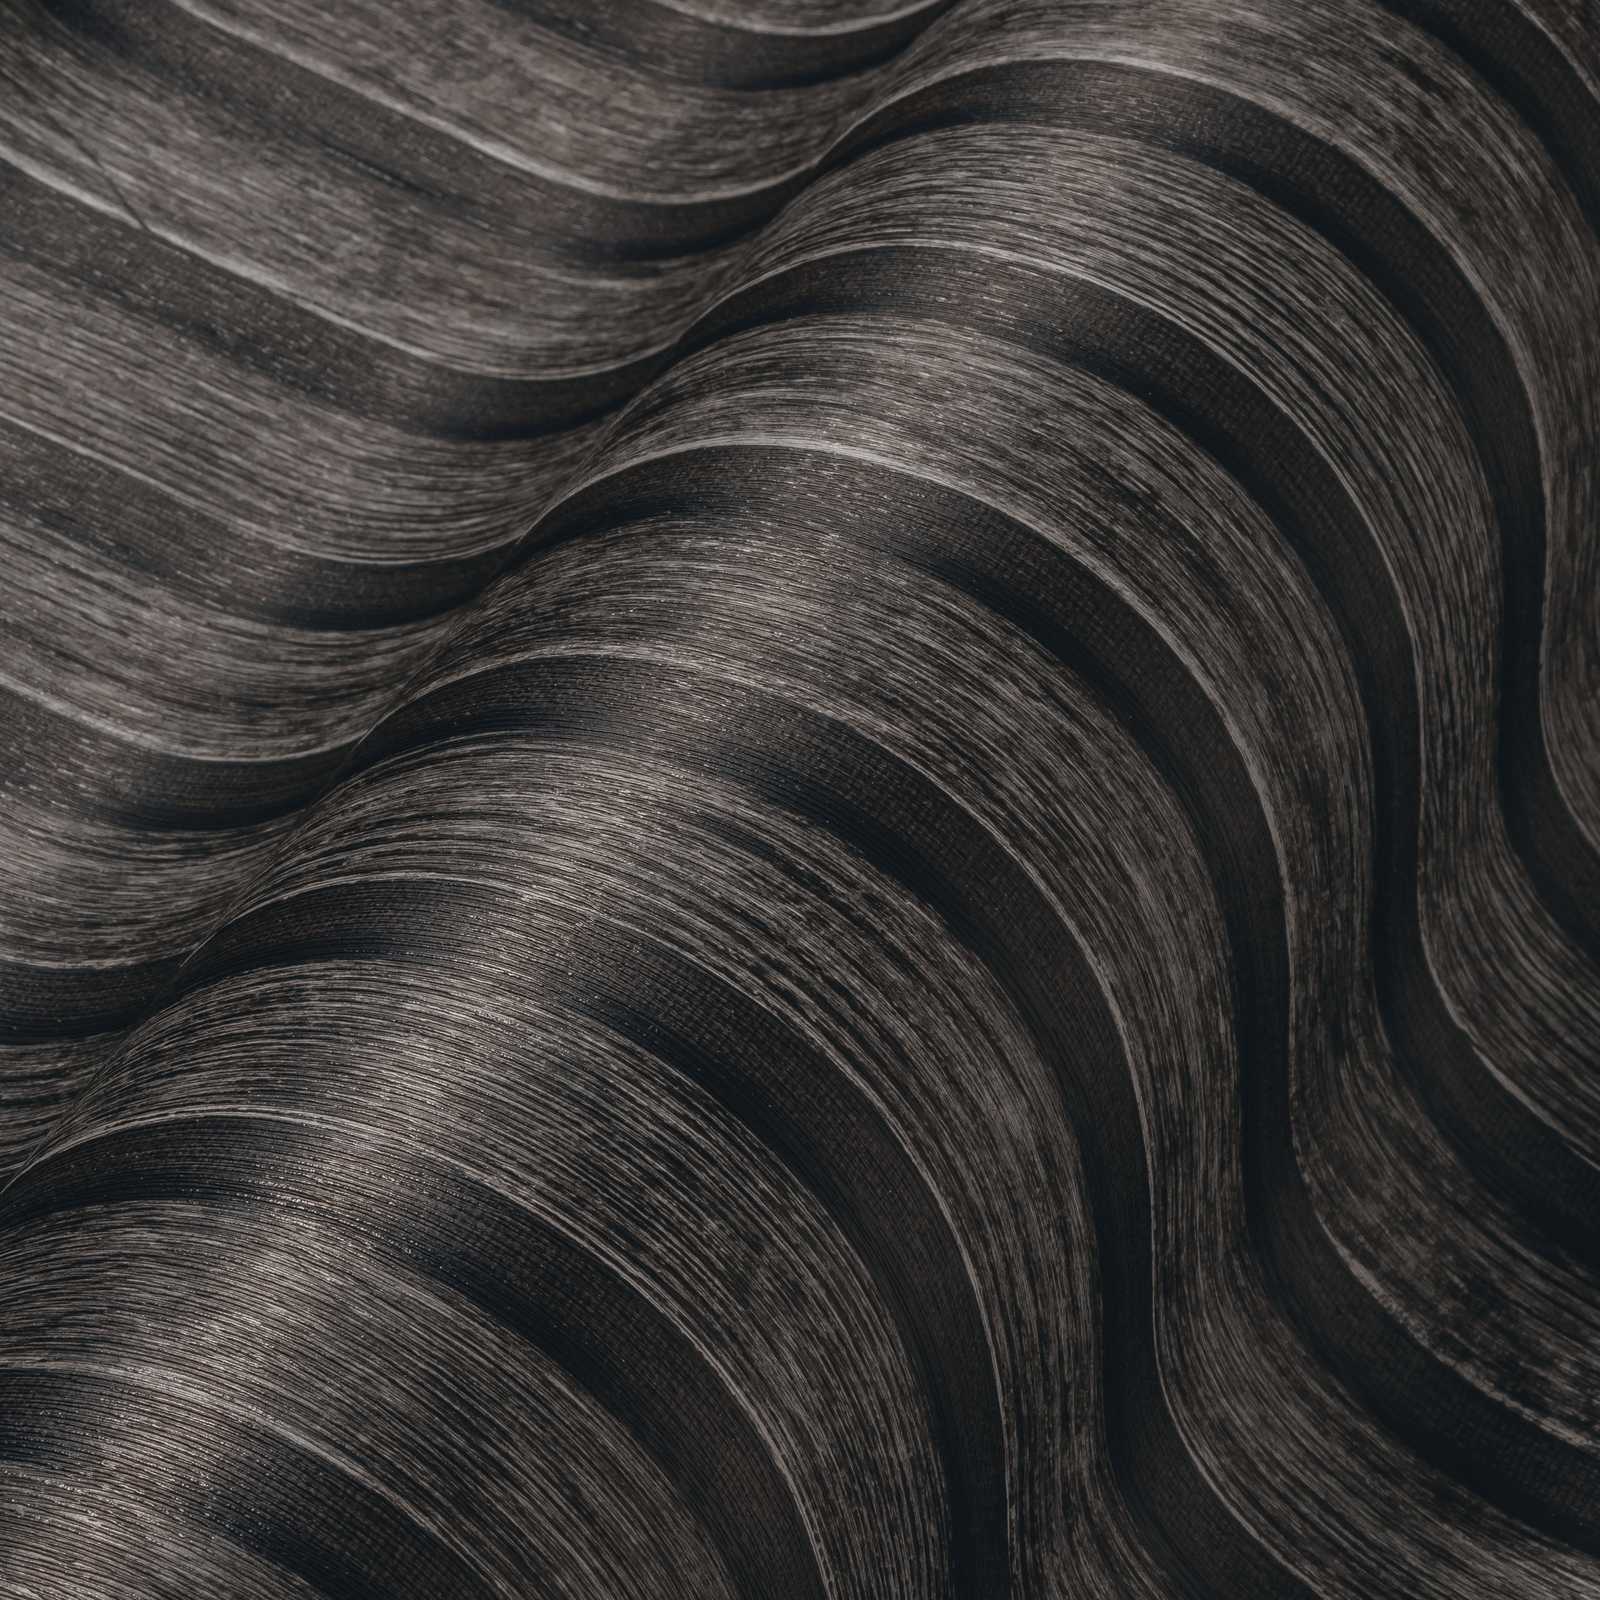             Papier peint imitation bois avec motif de lambris - noir, marron
        